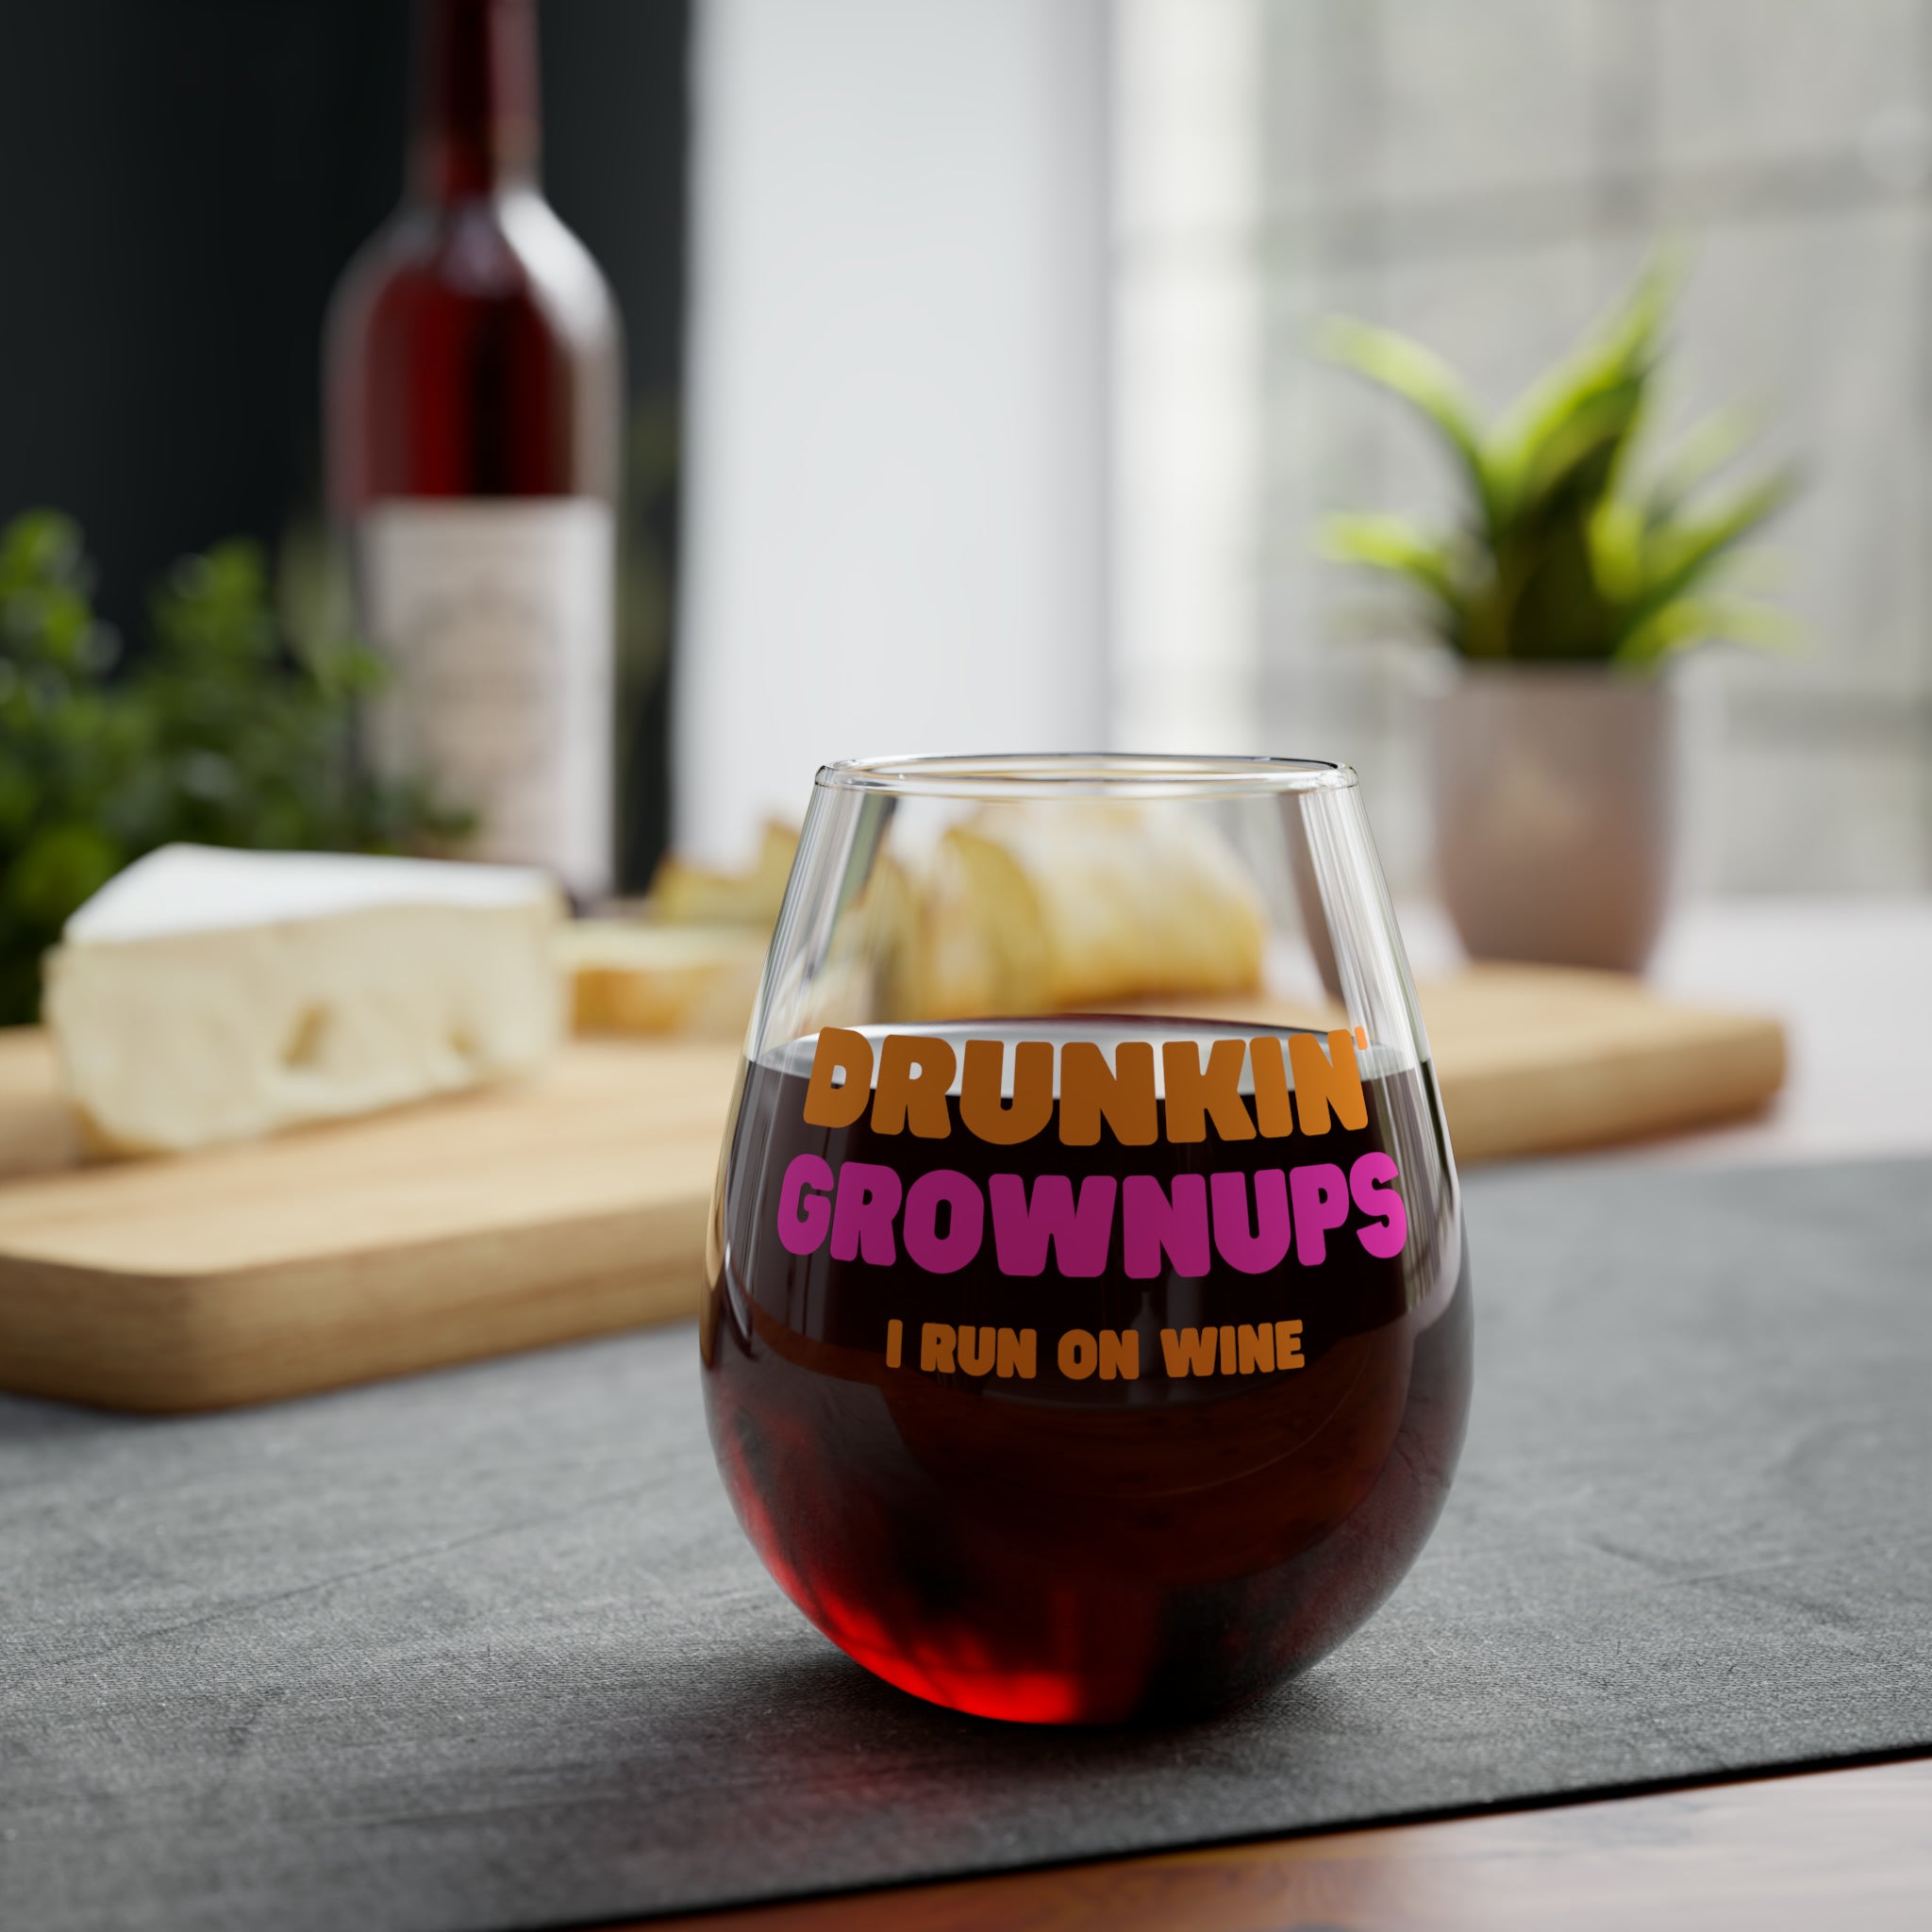 Stemless Wine Glass, 11.75oz - Drunkin Grownups